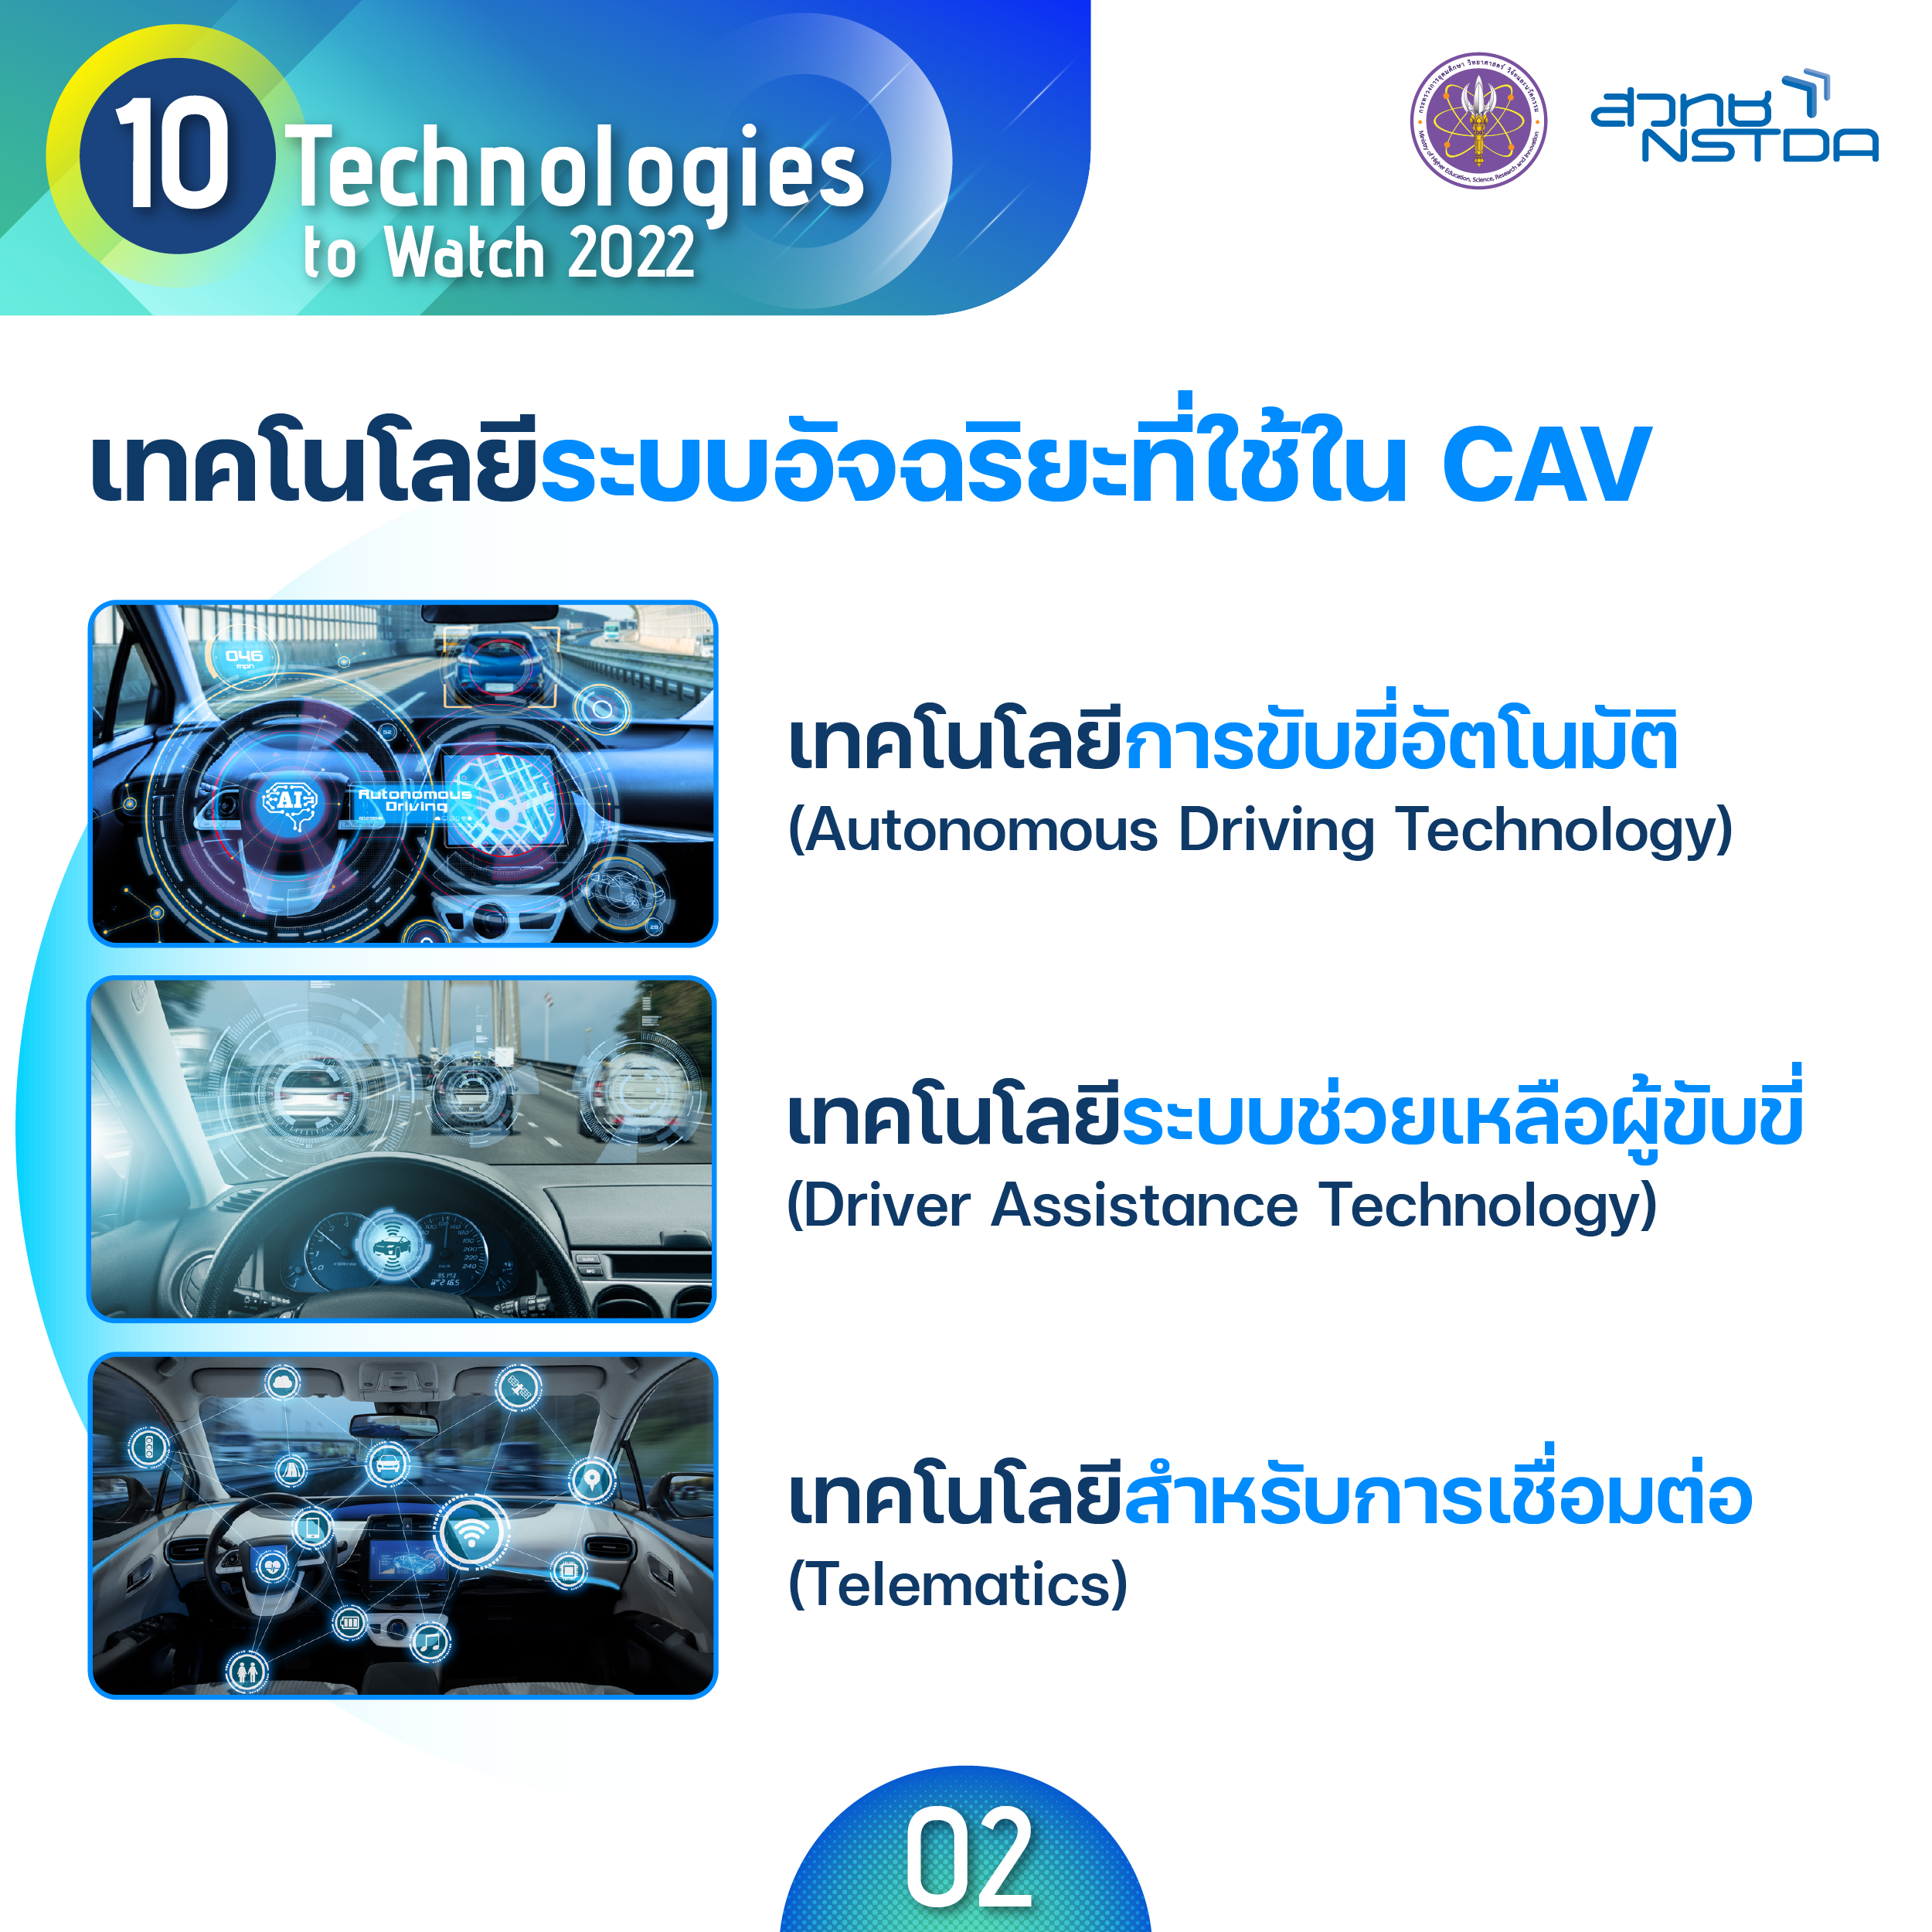 เทคโนโลยียานยนต์อัตโนมัติและเชื่อมต่อ (Connected and Autonomous Vehicle Technologies)